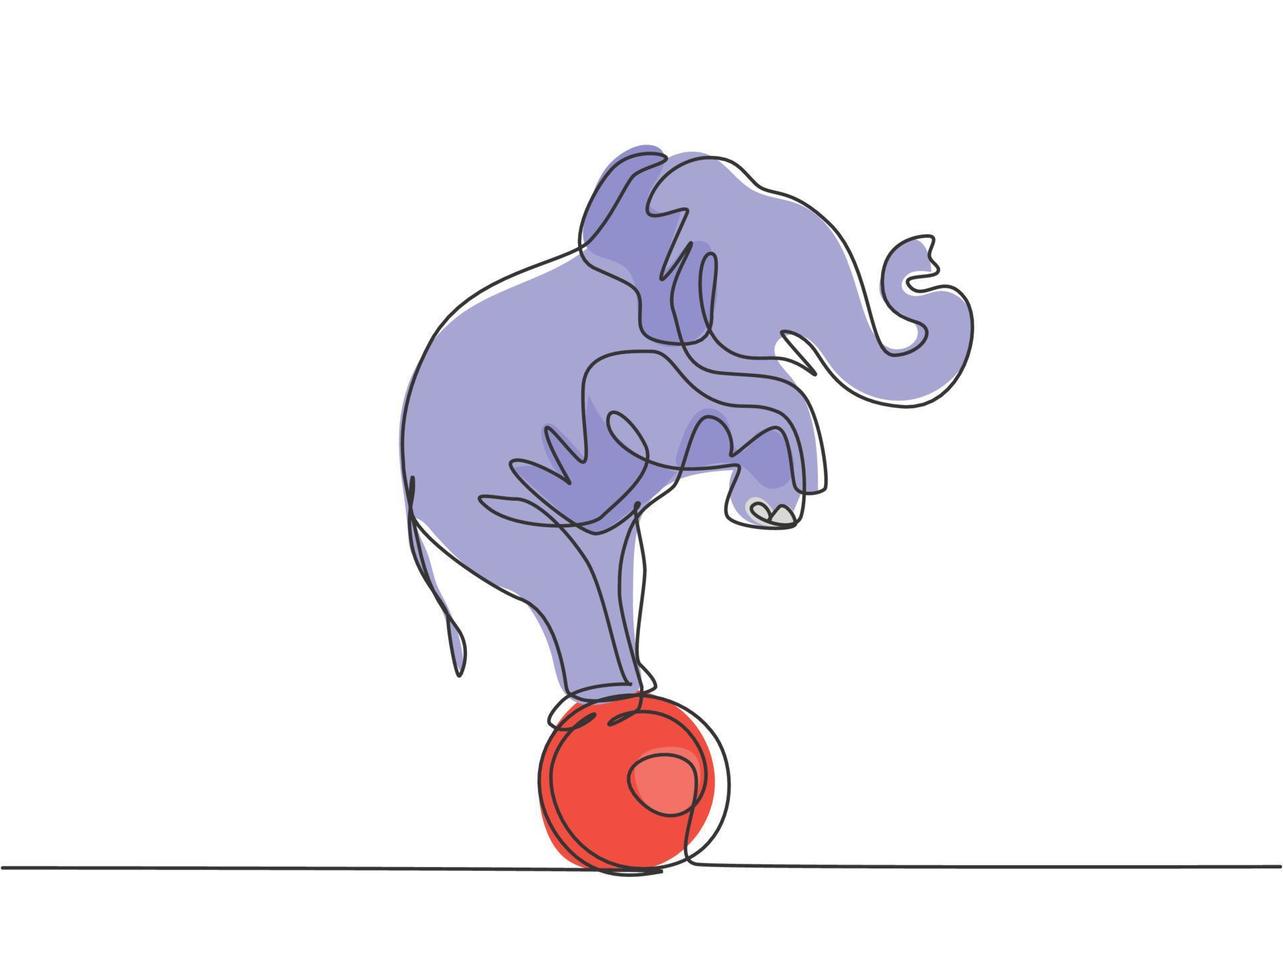 durchgehend eine Linie zeichnend ein trainierter Elefant steht mit erhobenen Vorderbeinen auf dem Ball. sehr gute leistung und erfolgreiche zirkusshow. einzelne Linie zeichnen Design-Vektor-Grafik-Darstellung. vektor